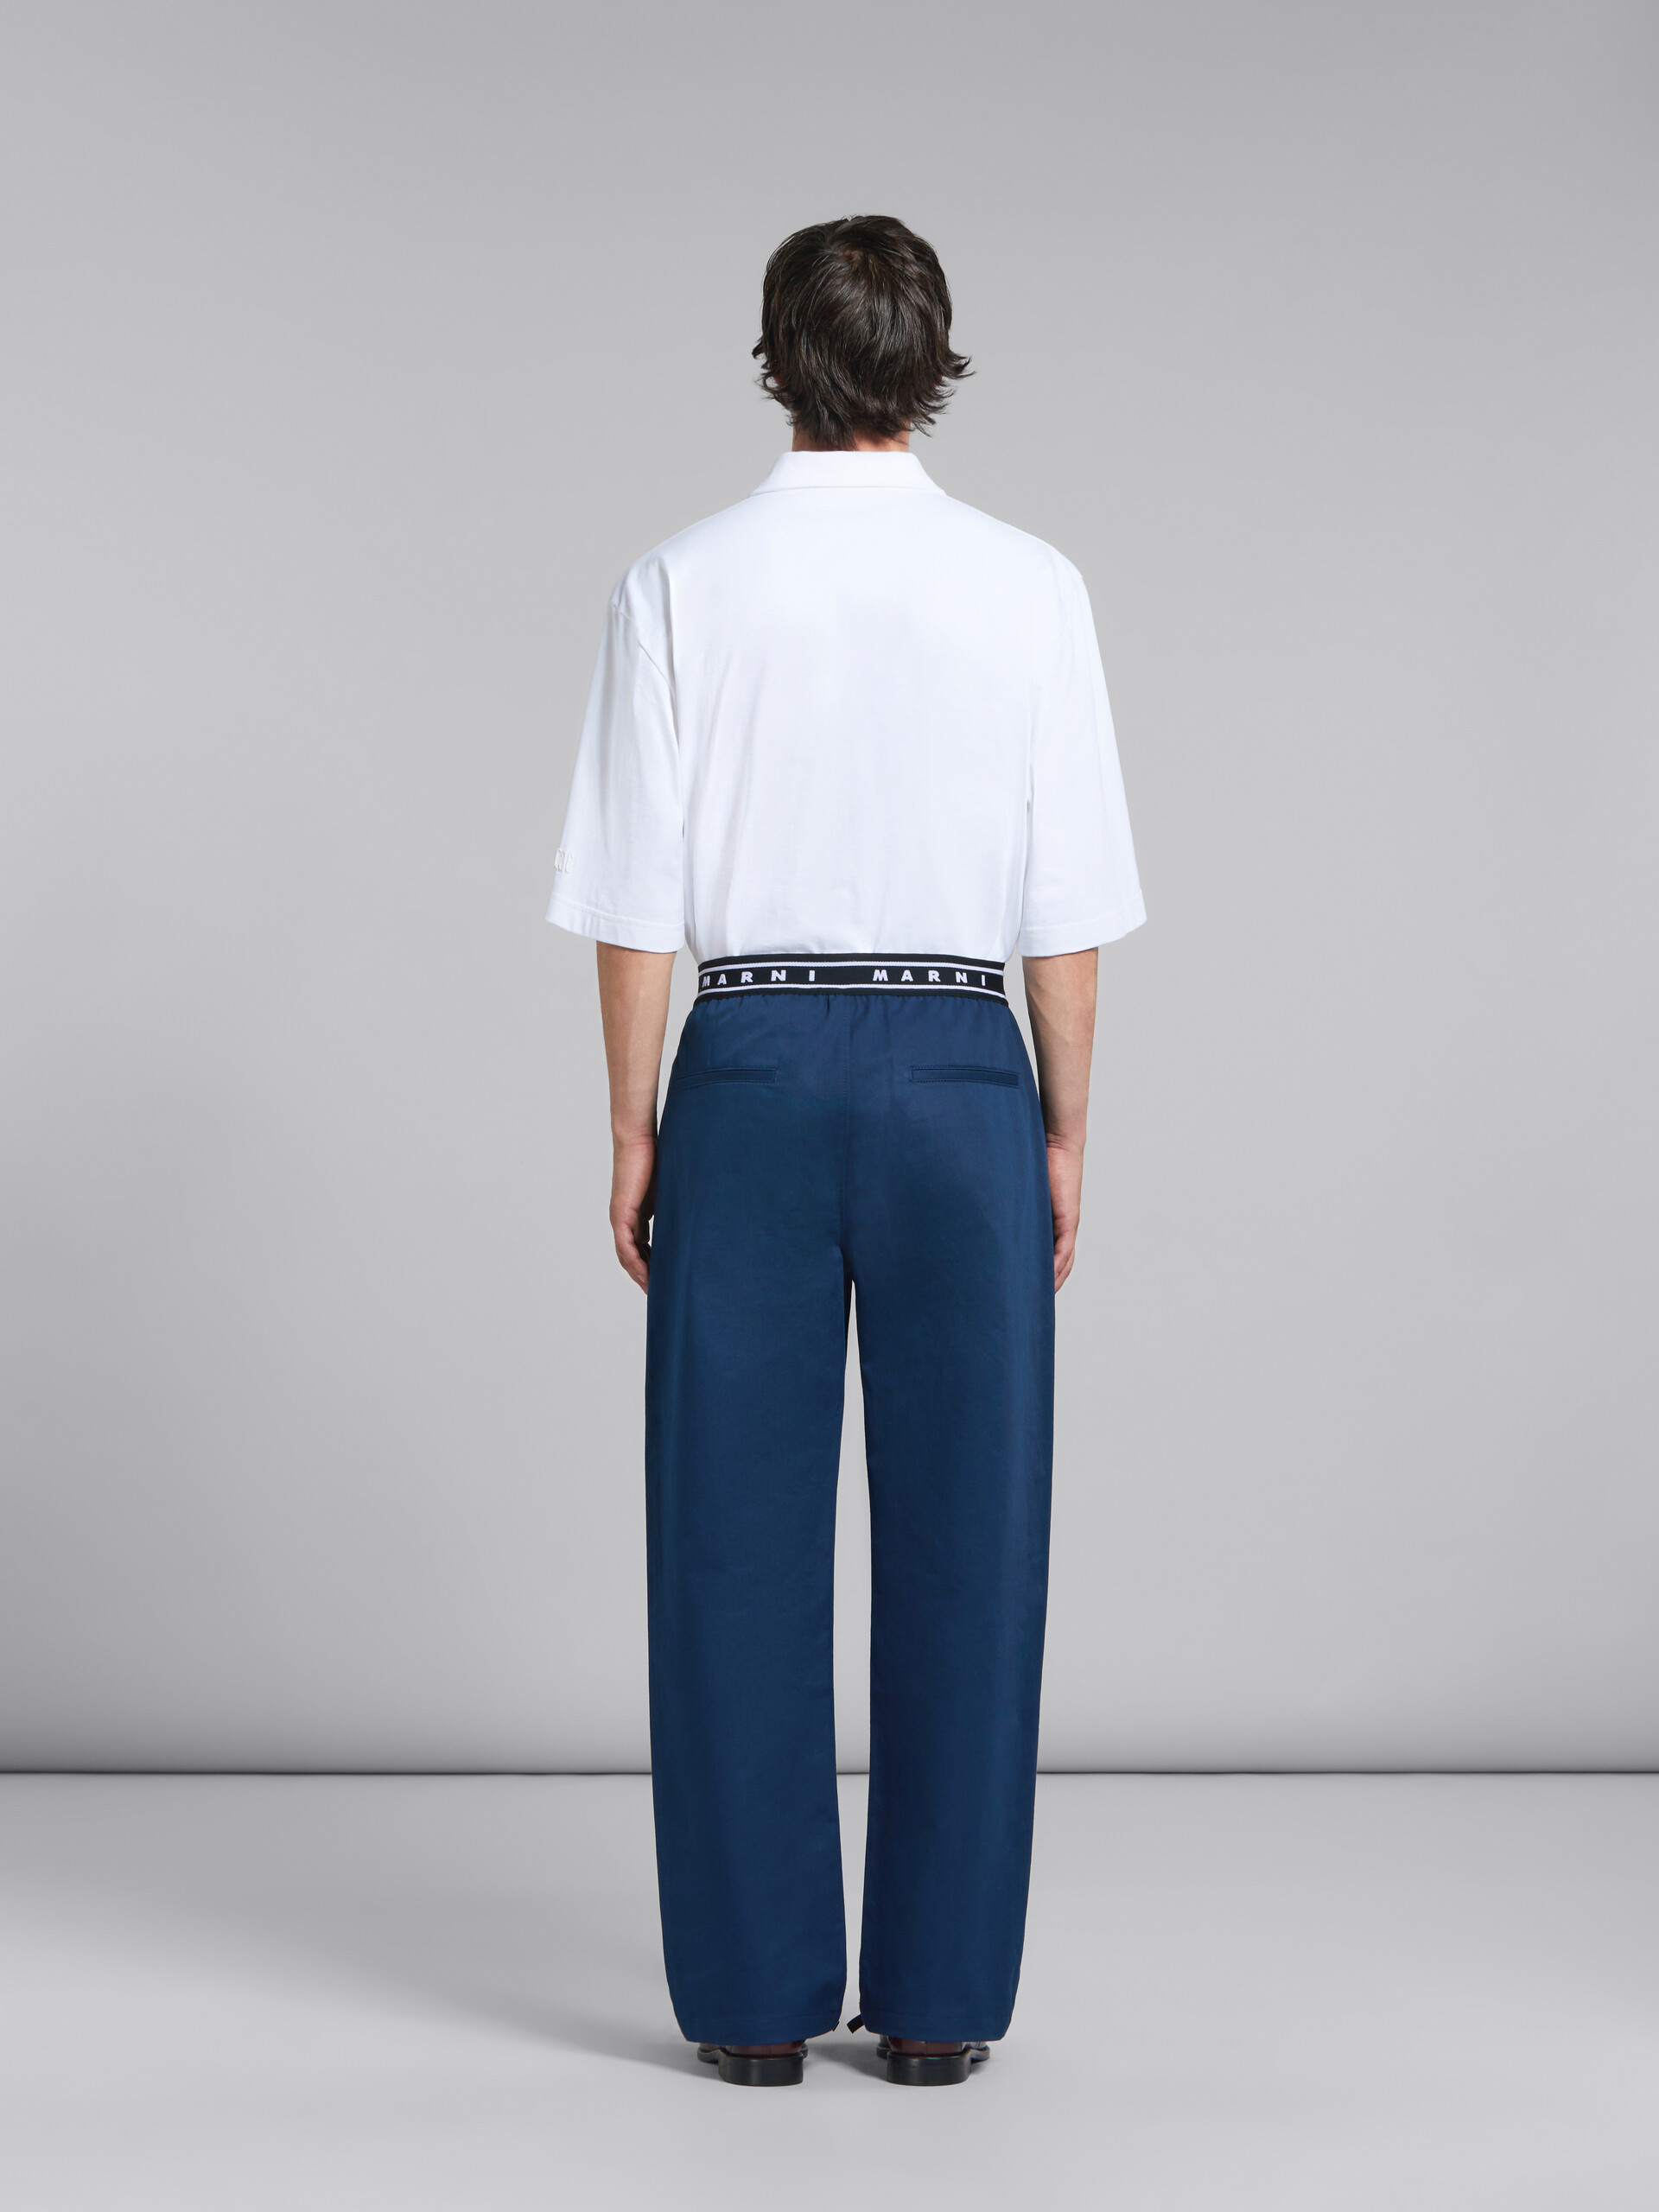 Pantaloni in cotone biologico blu con logo in vita sul retro - Pantaloni - Image 3